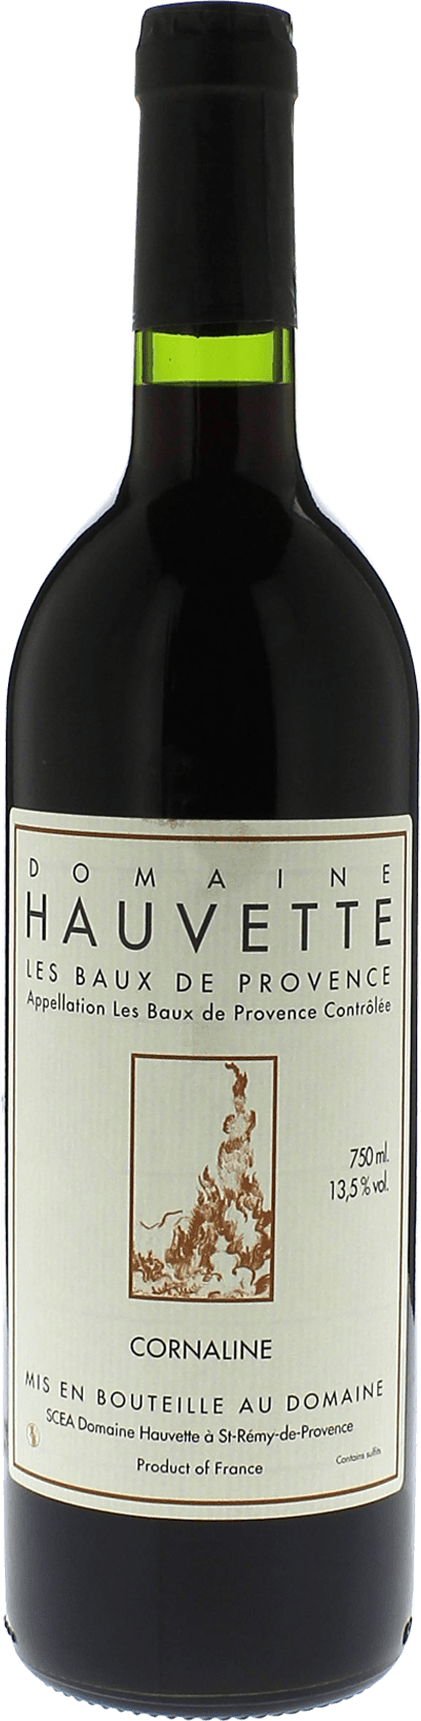 Domaine hauvette cornaline 2014  AOC Baux de Provence, Slection provence rouge